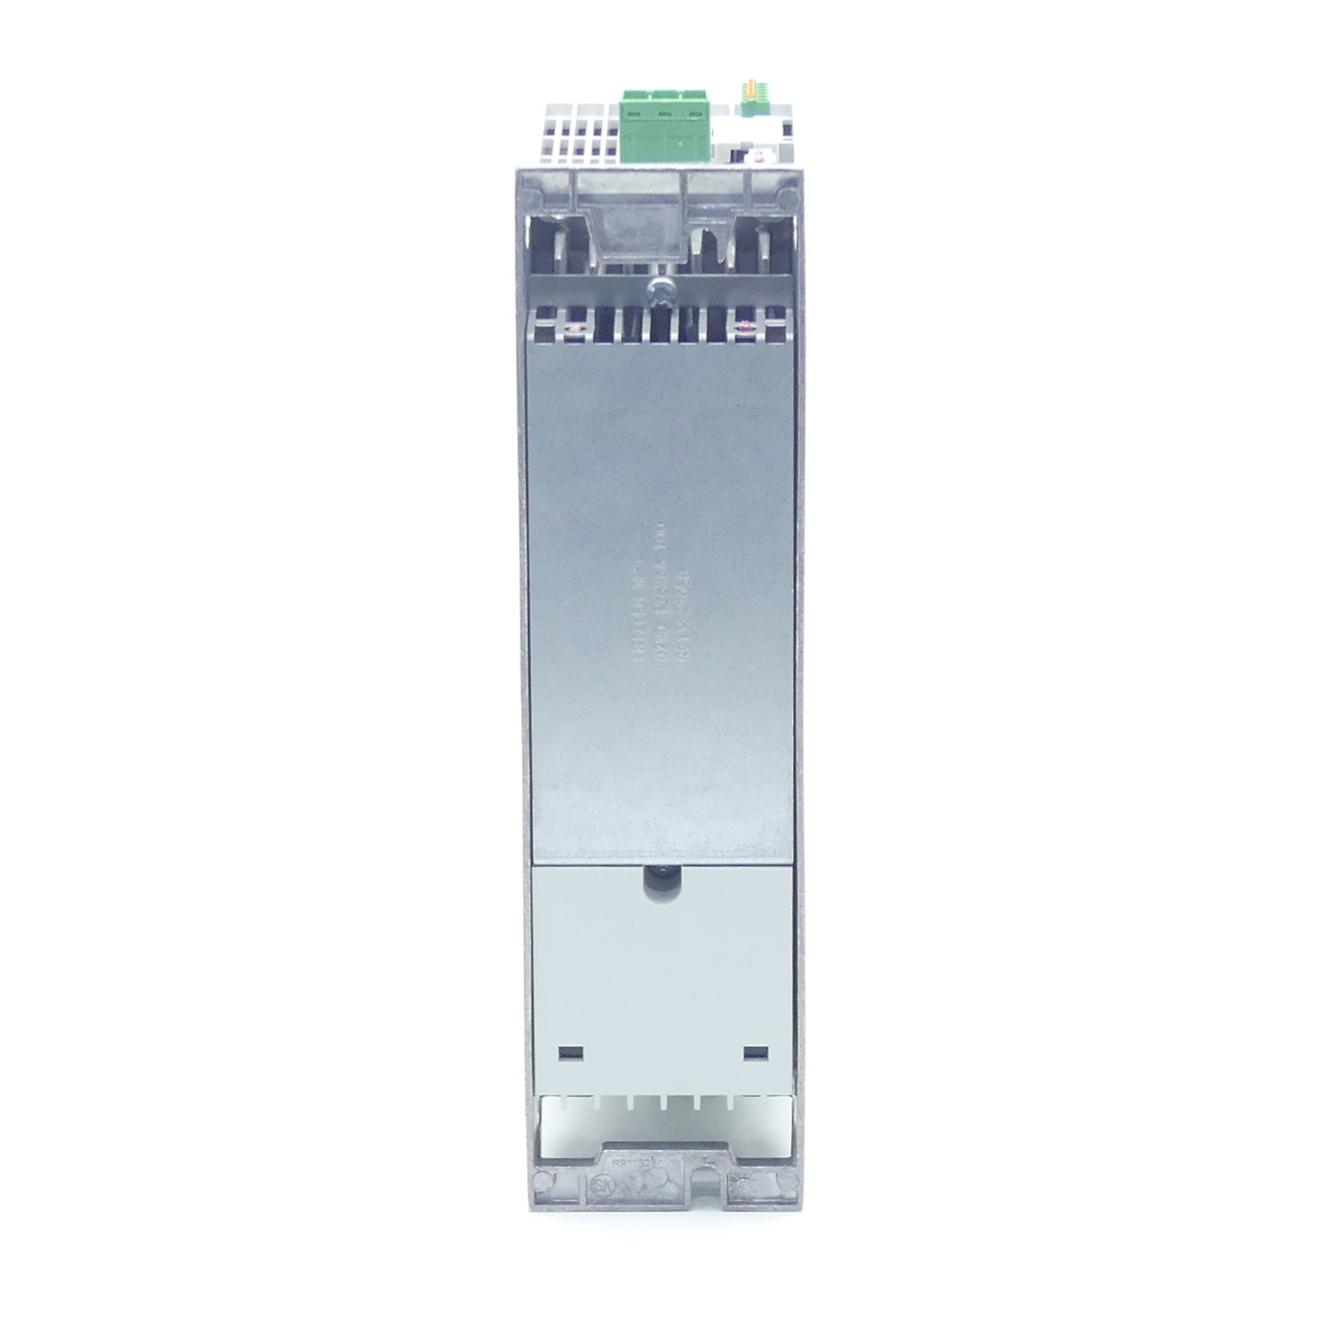 Produktfoto 4 von REXROTH IndraDrive Kompaktumrichter HCS01.1E-W0018-A-03-B-ET-EC-NN-S4-NN-FW